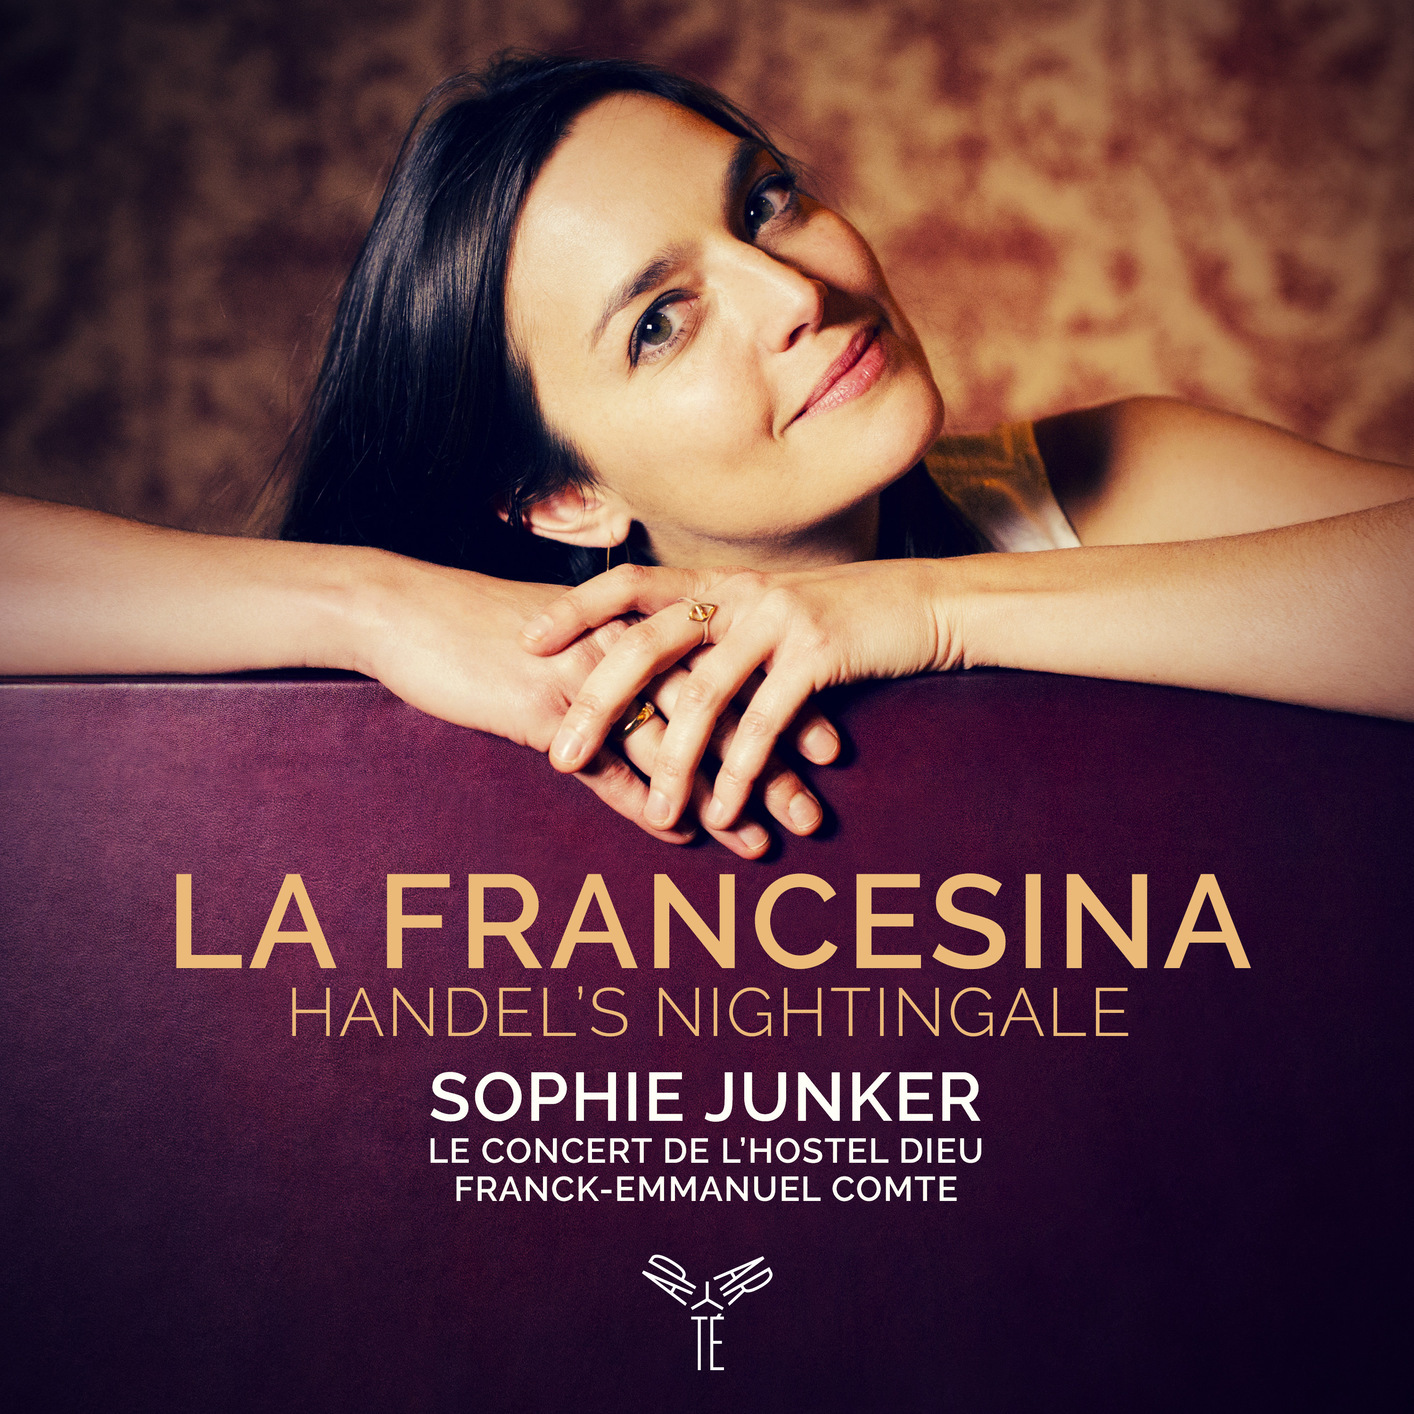 Sophie Junker, Le Concert de l’Hostel Dieu – La Francesina, Handel’s nightingale (2020) [FLAC 24bit/96kHz]